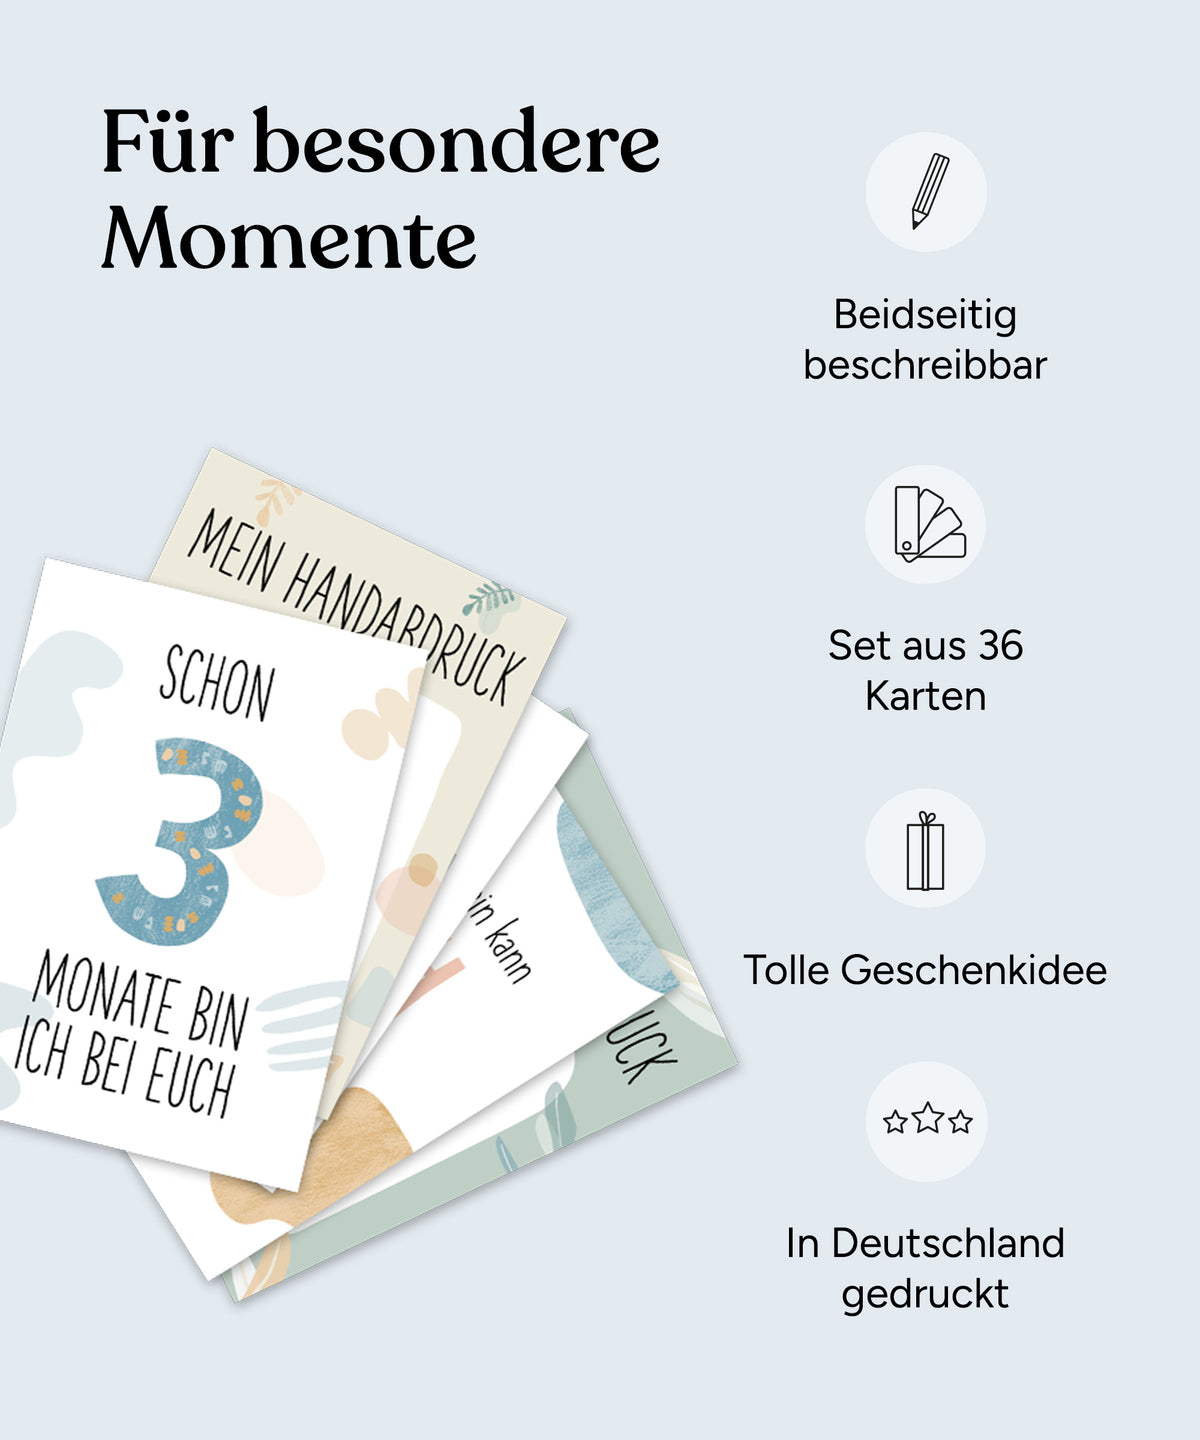 Vorteile der Meilensteinkarten: Beidseitig beschreibbar, Set aus 36 Karten, tolle Geschenkidee, in Deutschland gedruckt.